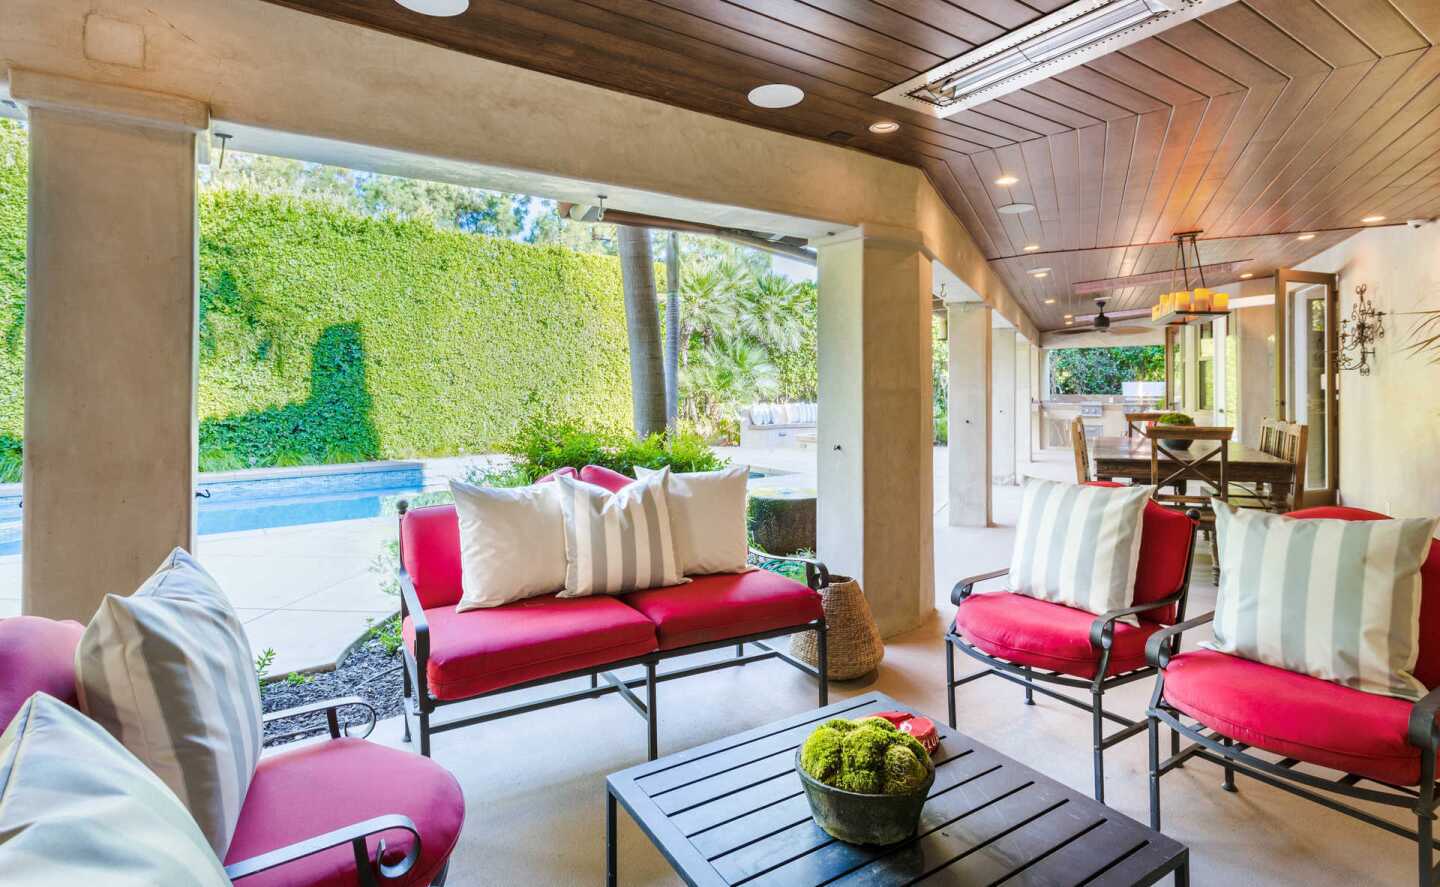 Chris Pratt and Anna Faris' marital home: a patio